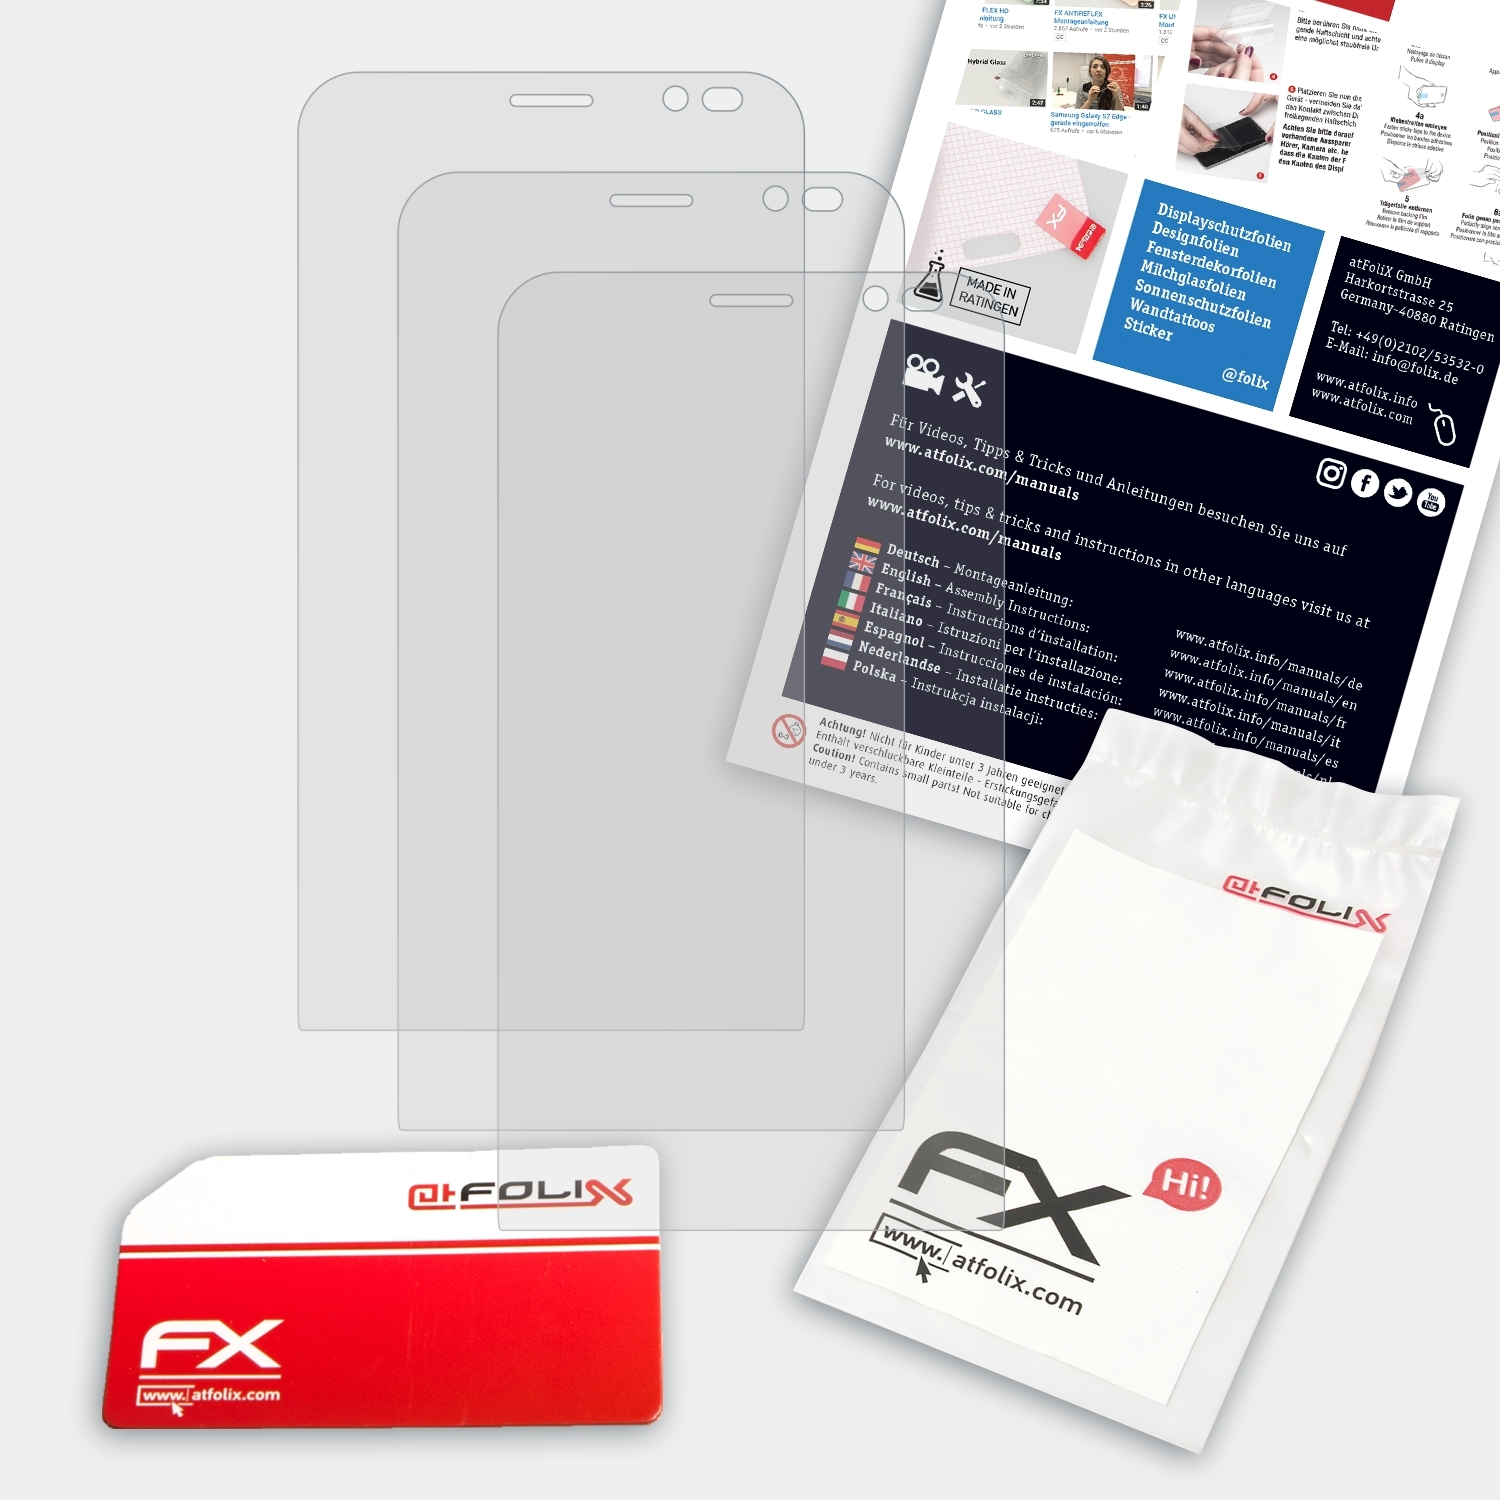 ATFOLIX 3x FX-Antireflex Displayschutz(für (ZB551KL)) Asus ZenFone Go